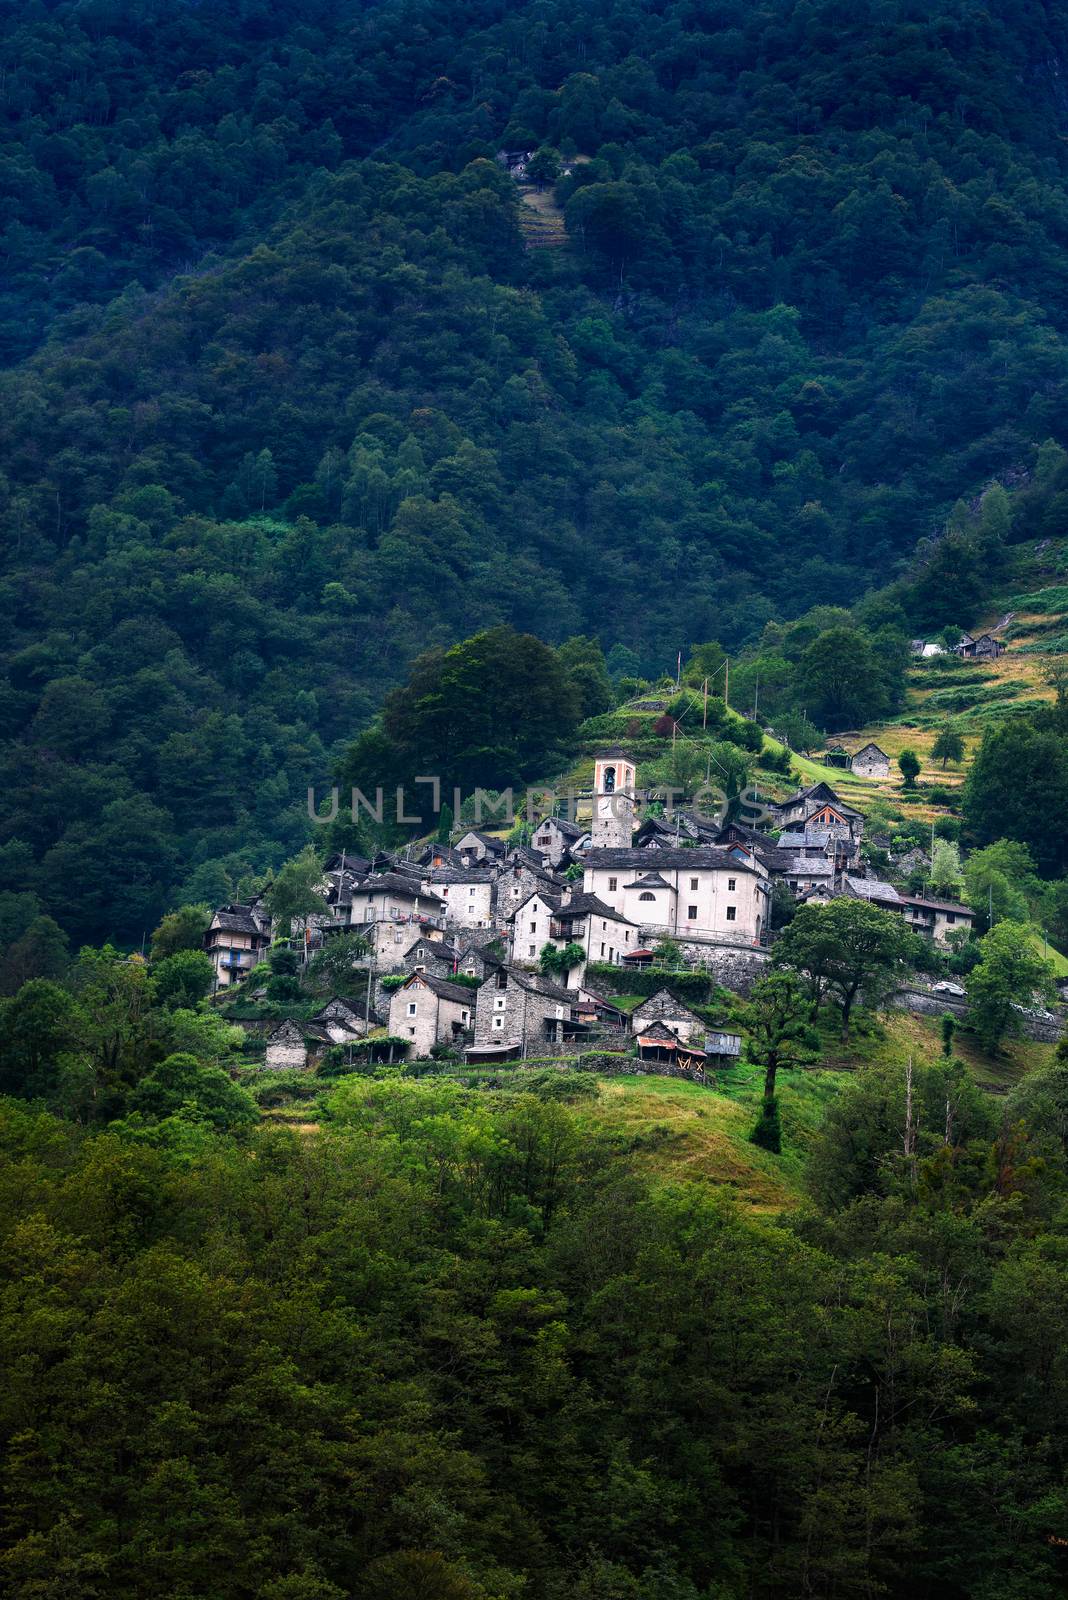 Ancient village of Corippo located near Lavertezzo in Canton Ticino, Switzerland by nickfox